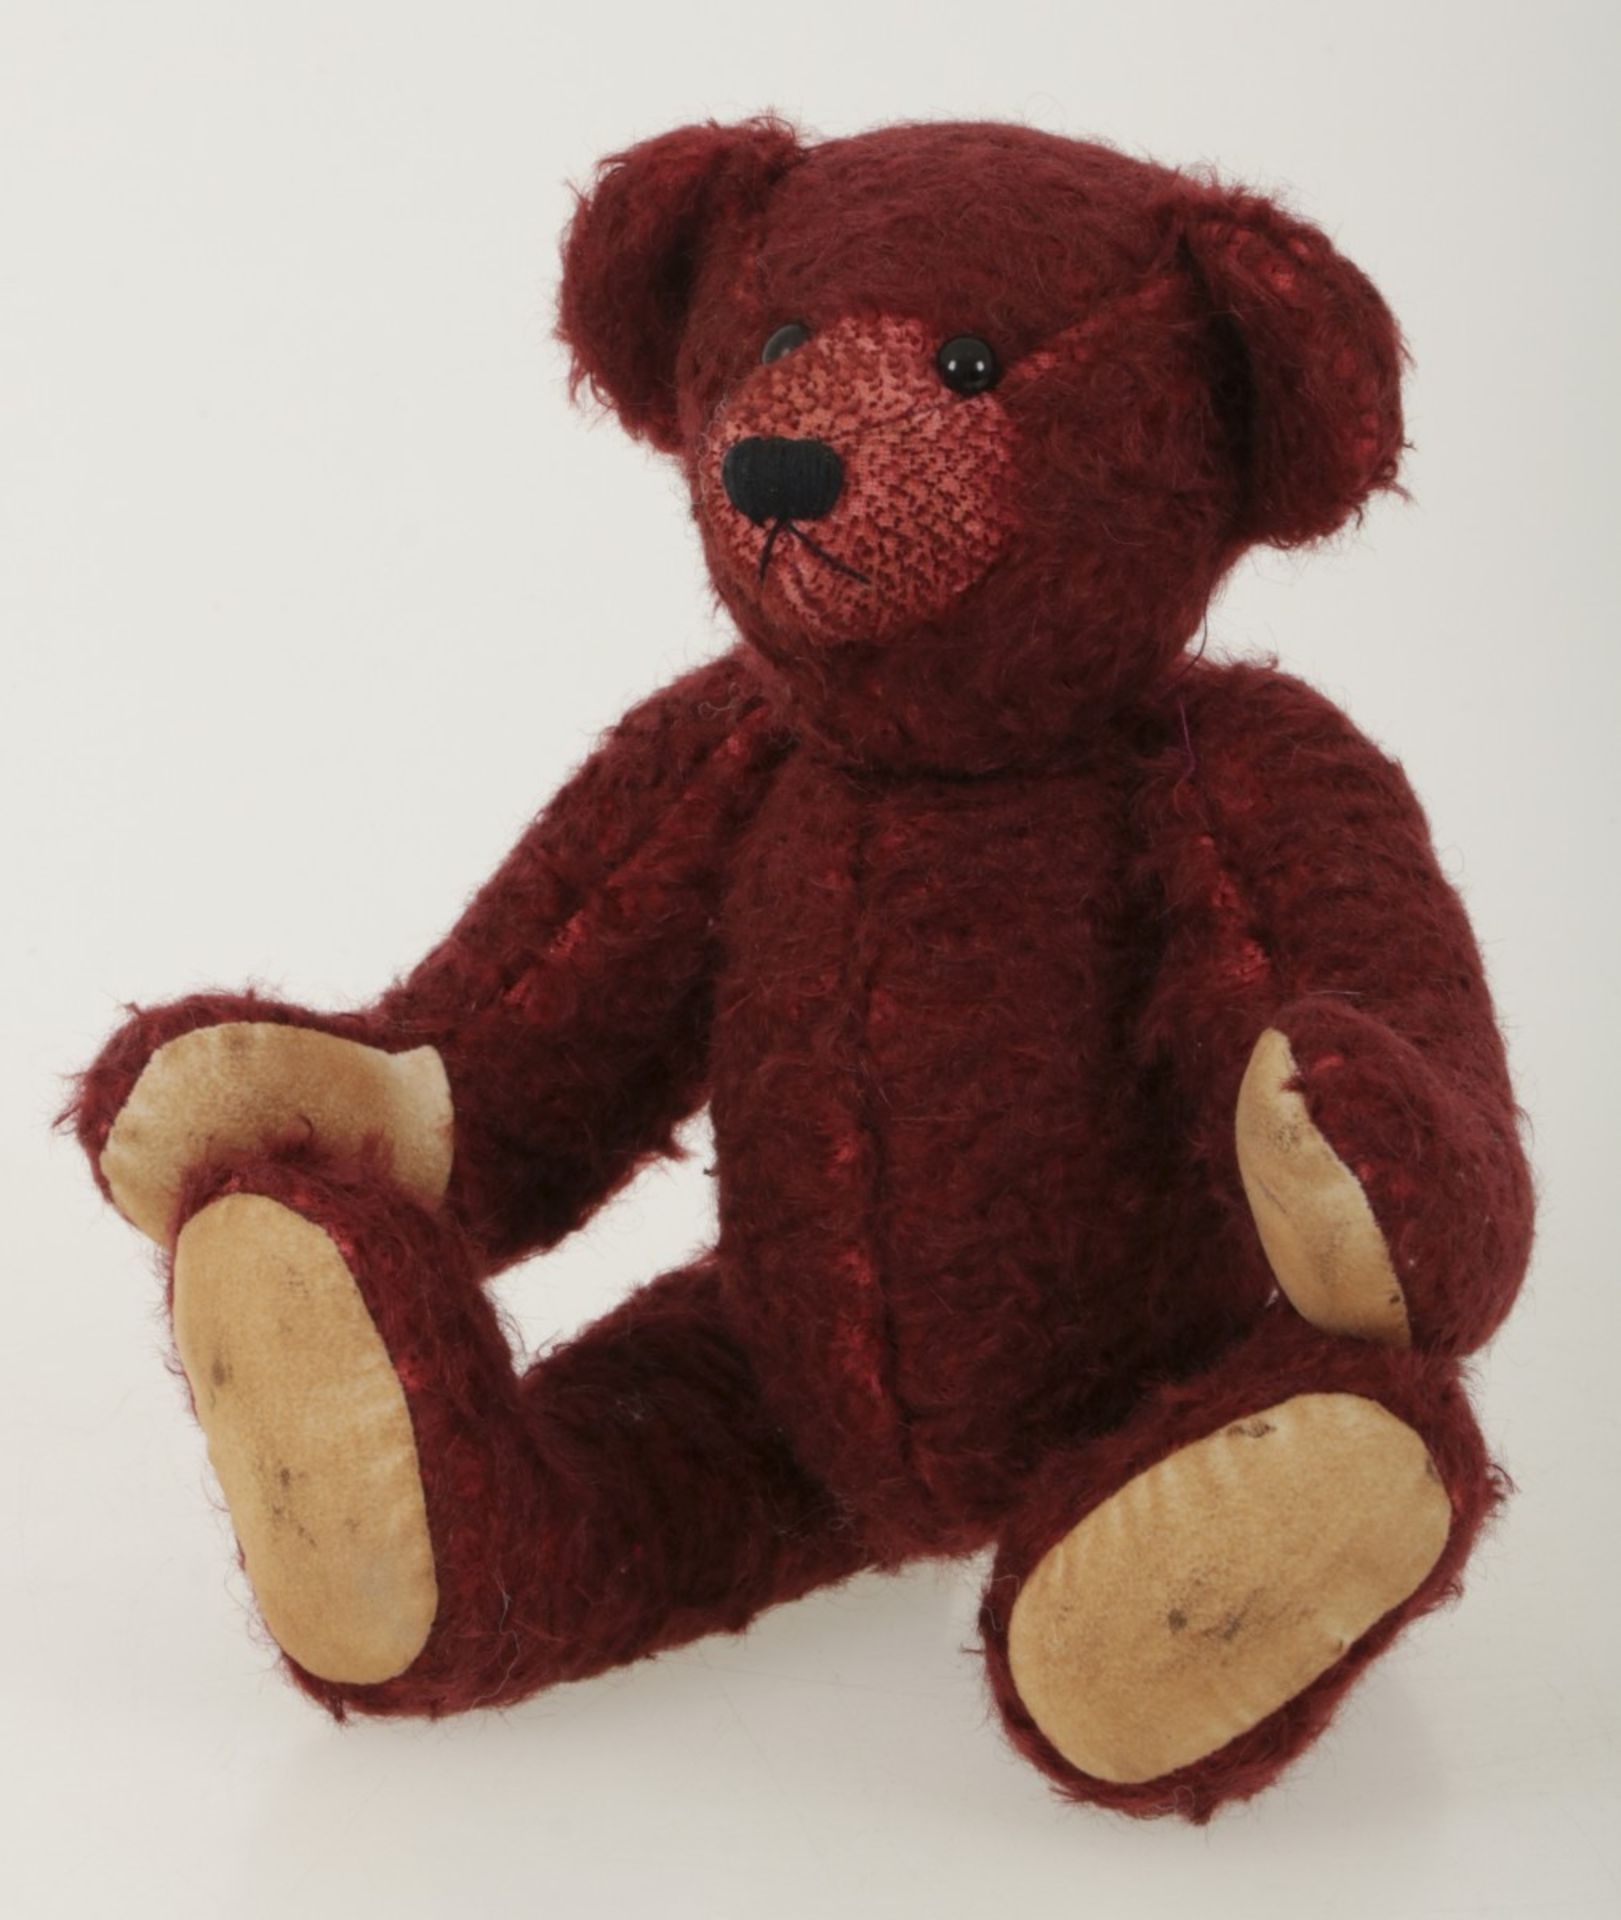 A burgundy coloured so-called 'Teddy' bear. Possibly Steiff.